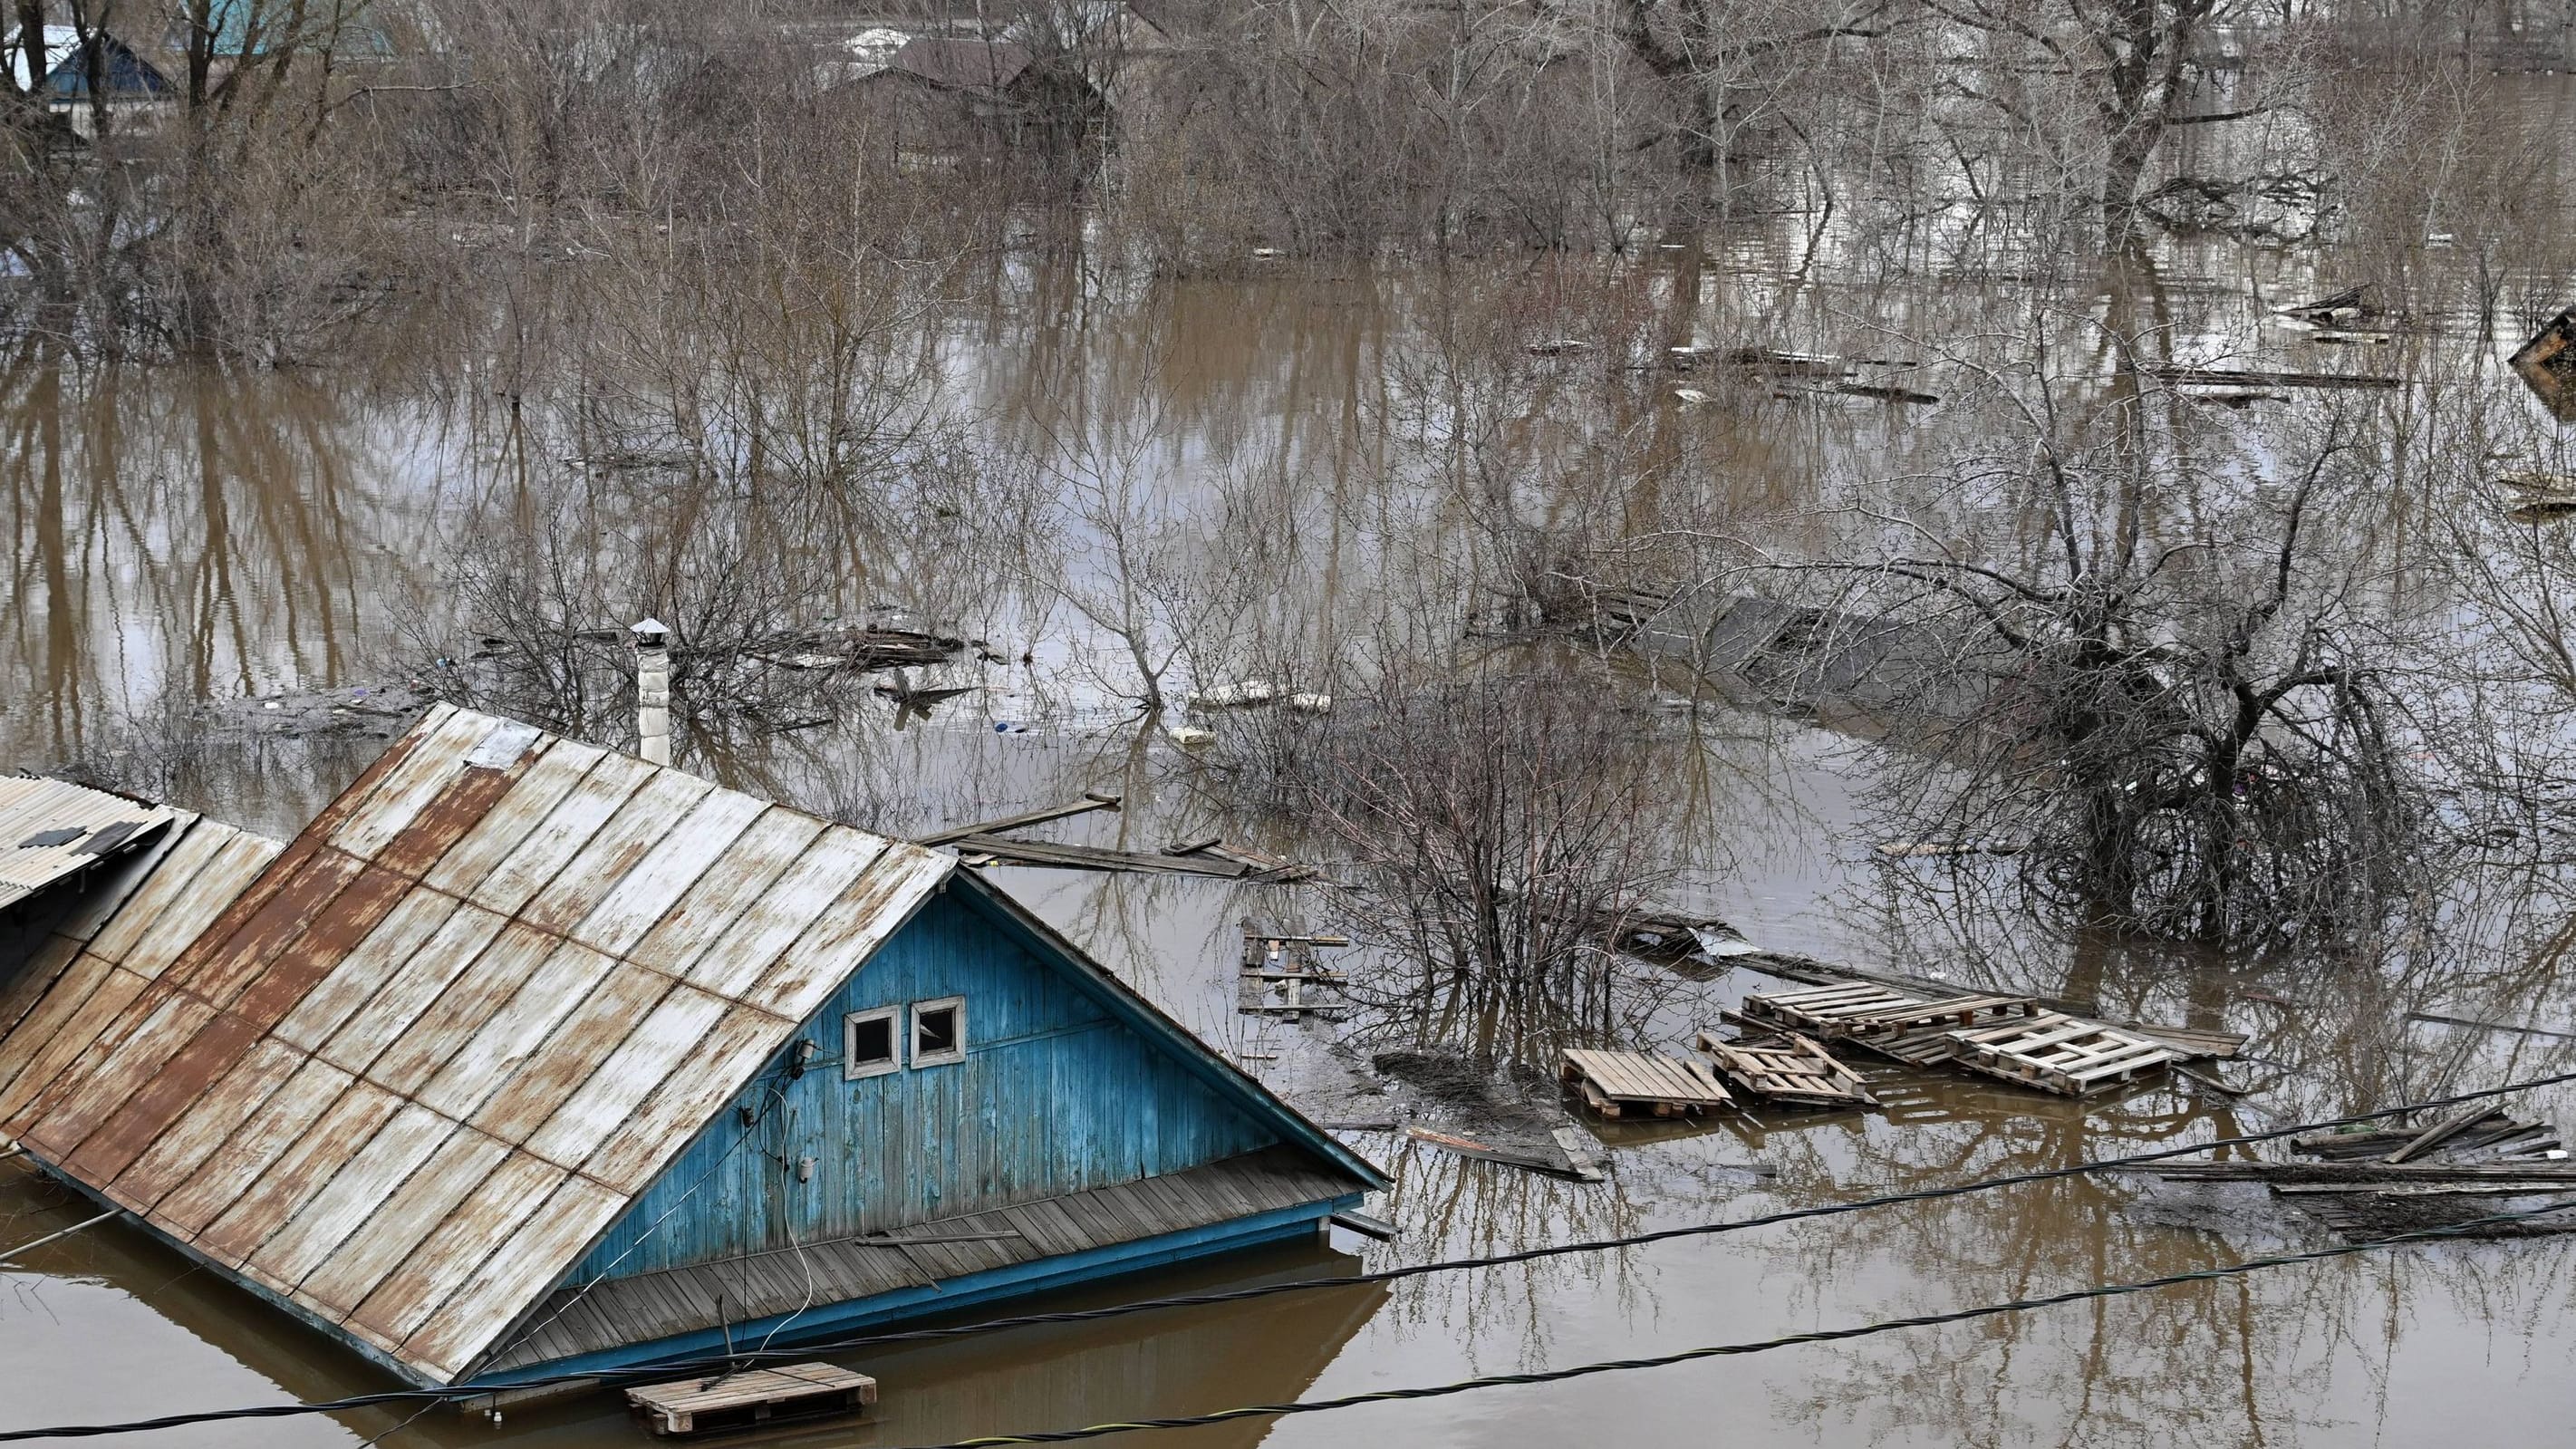 Russland: Ural-Flut bricht Rekord – Wut auf das Putin-Regime wächst